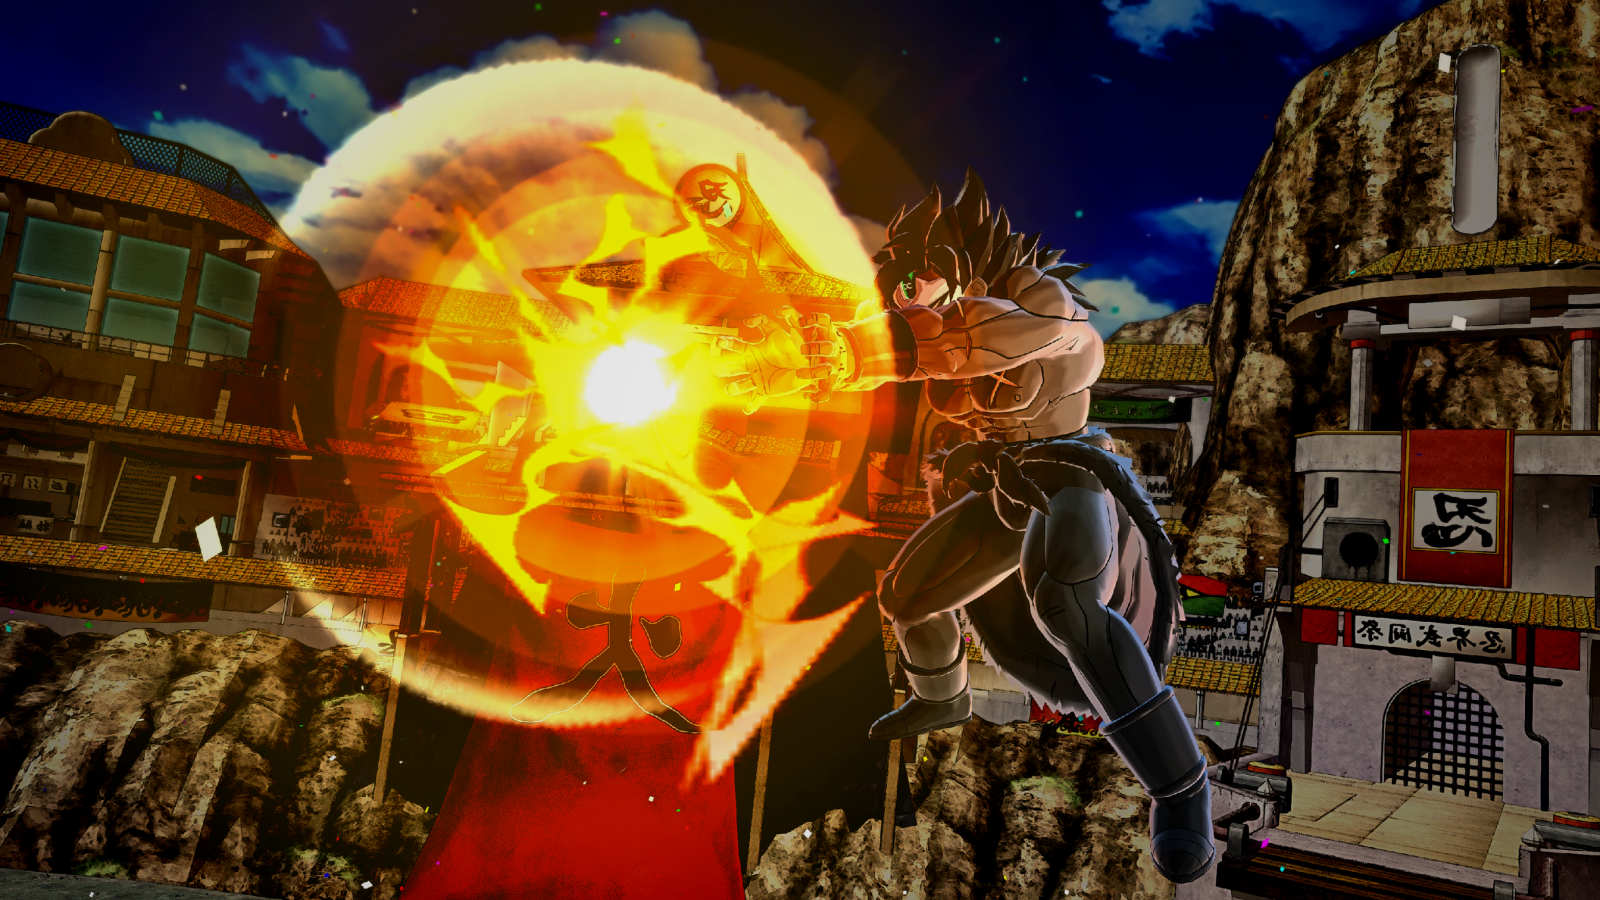 Revenge Final Flash, Dragon Ball Xenoverse 2 Wiki